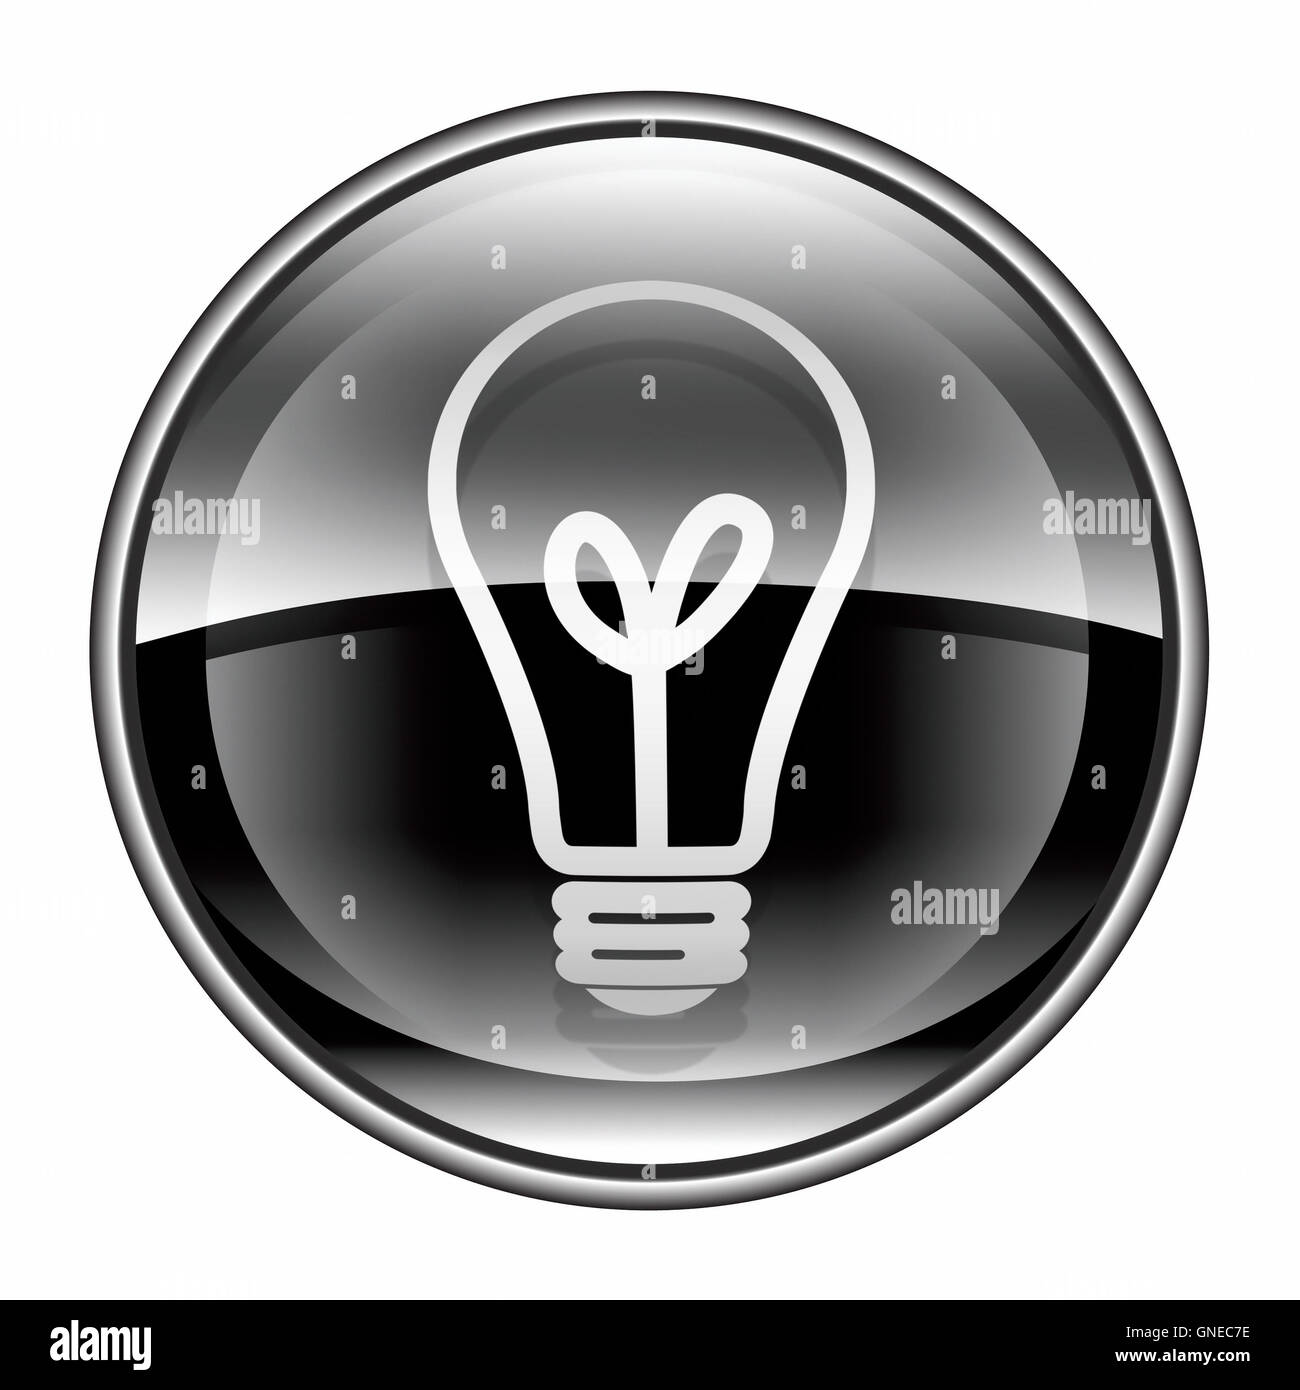 Light Bulb Icon black, isolated on white background Stock Photo